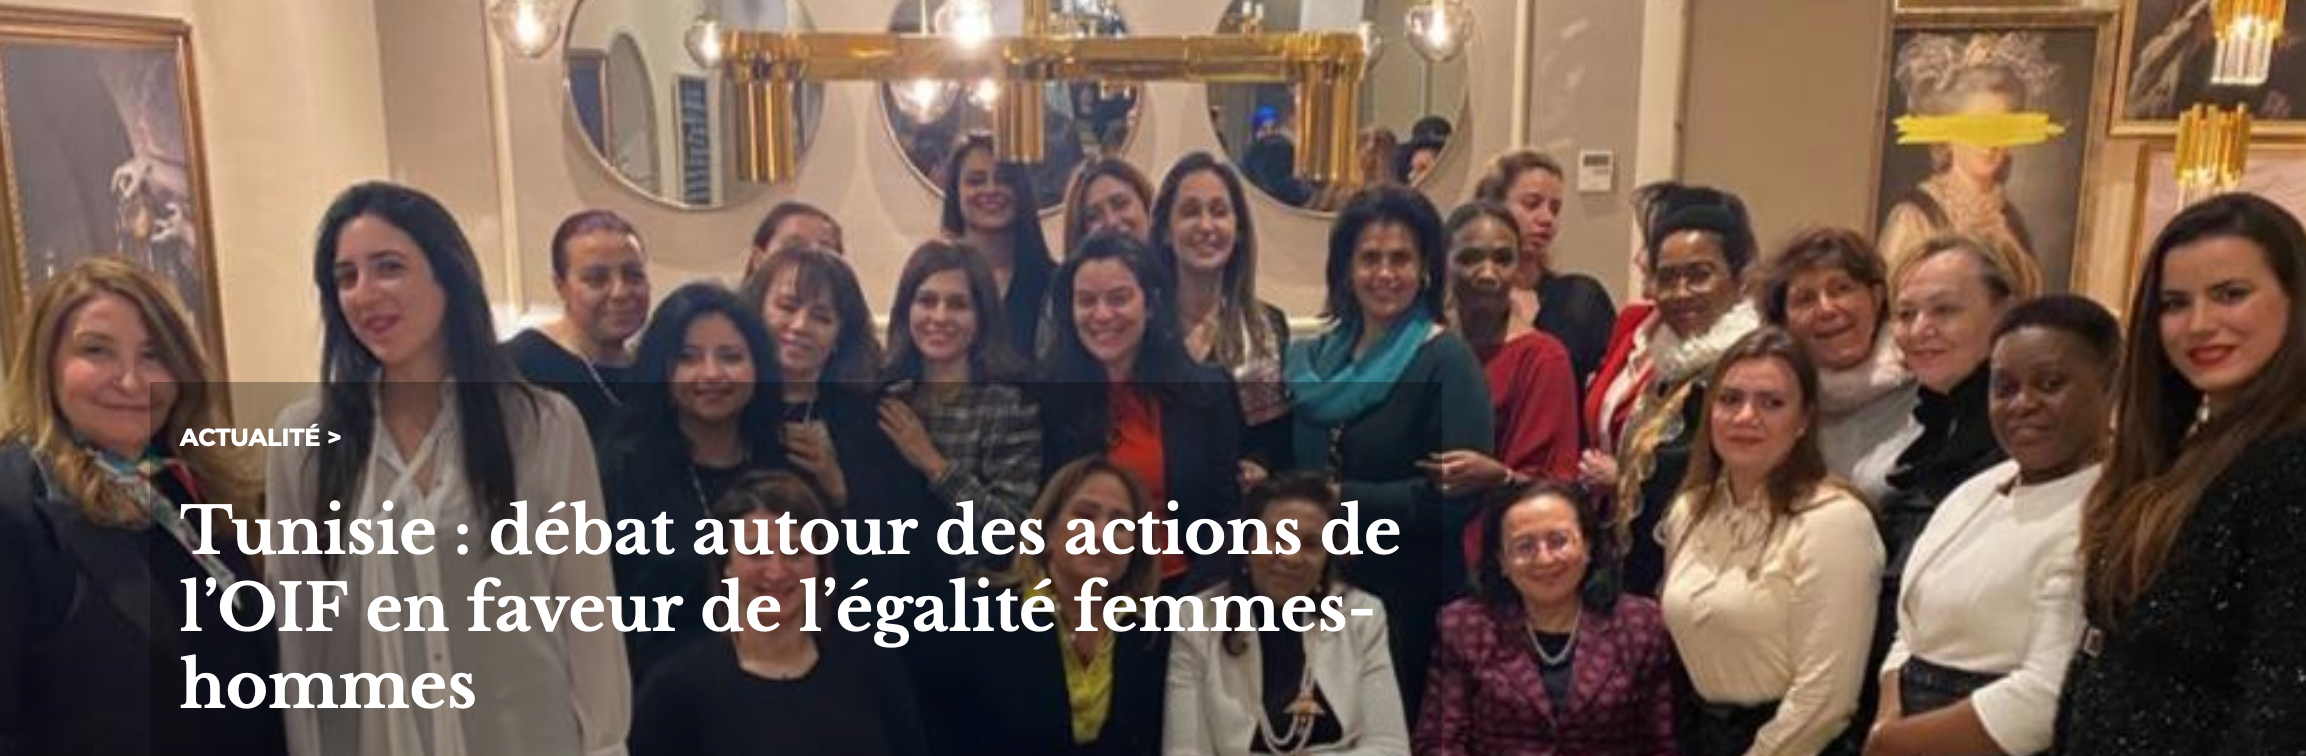 Tunisie : débat autour des actions de l’OIF en faveur de l’égalité femmes-hommes